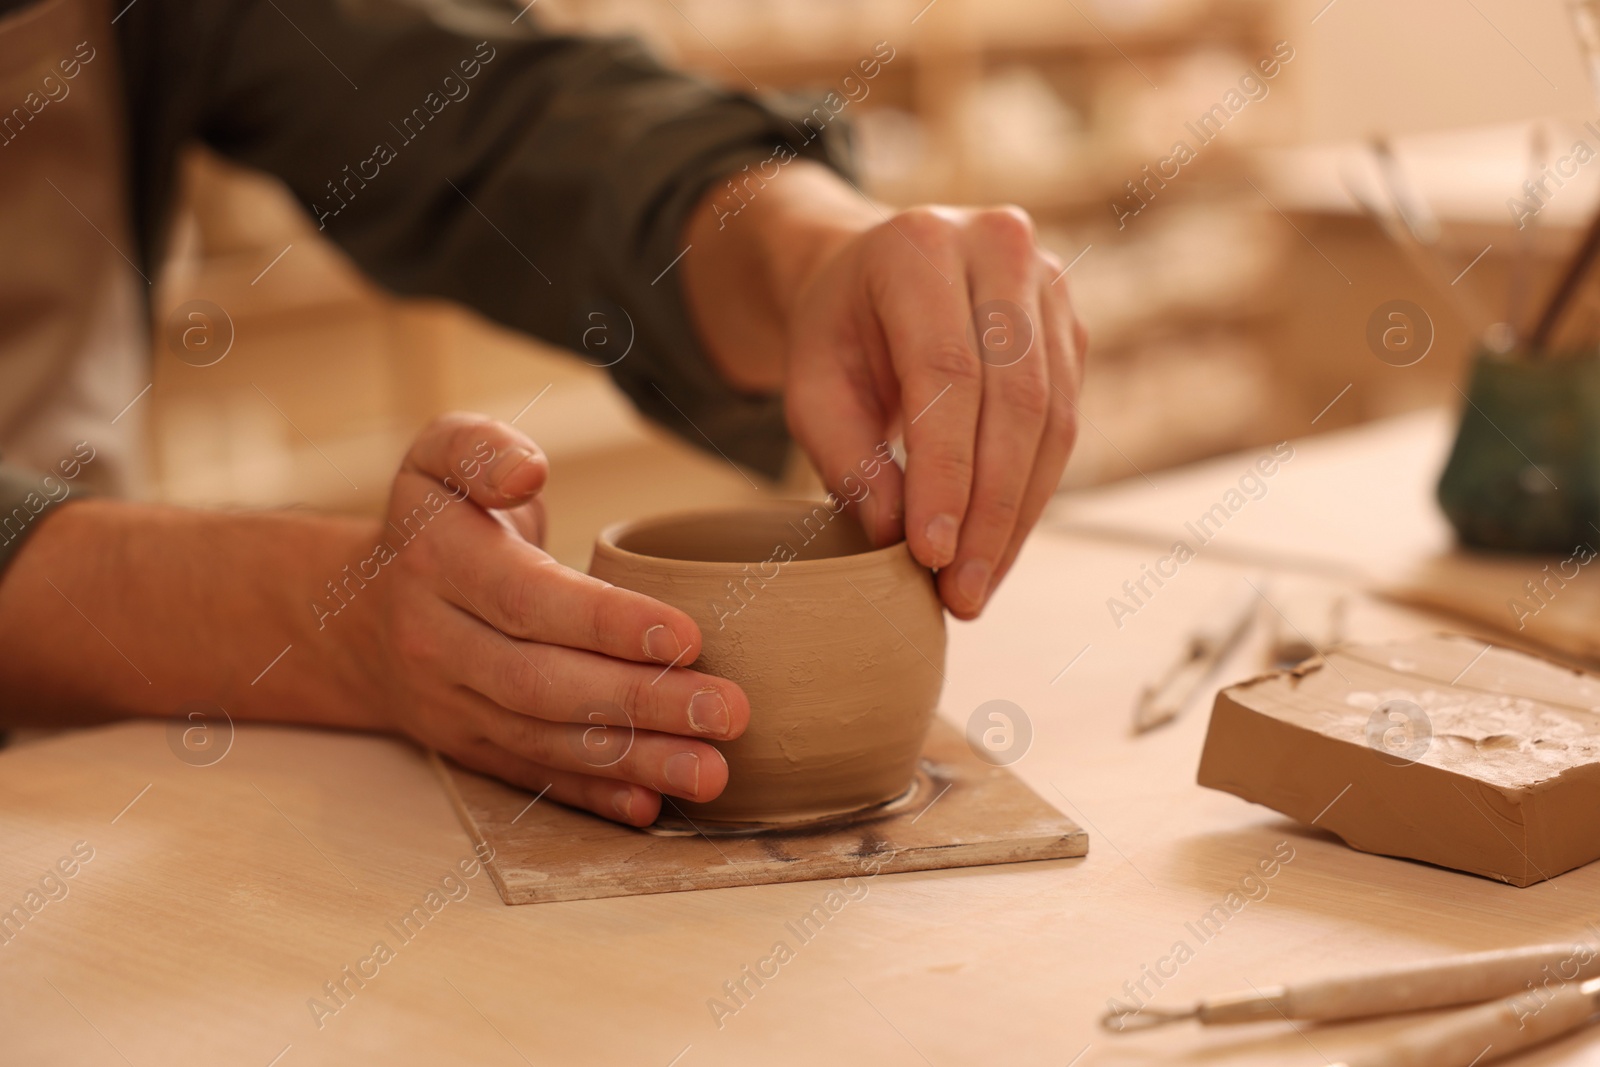 Photo of Clay crafting. Man making bowl at table indoors, closeup